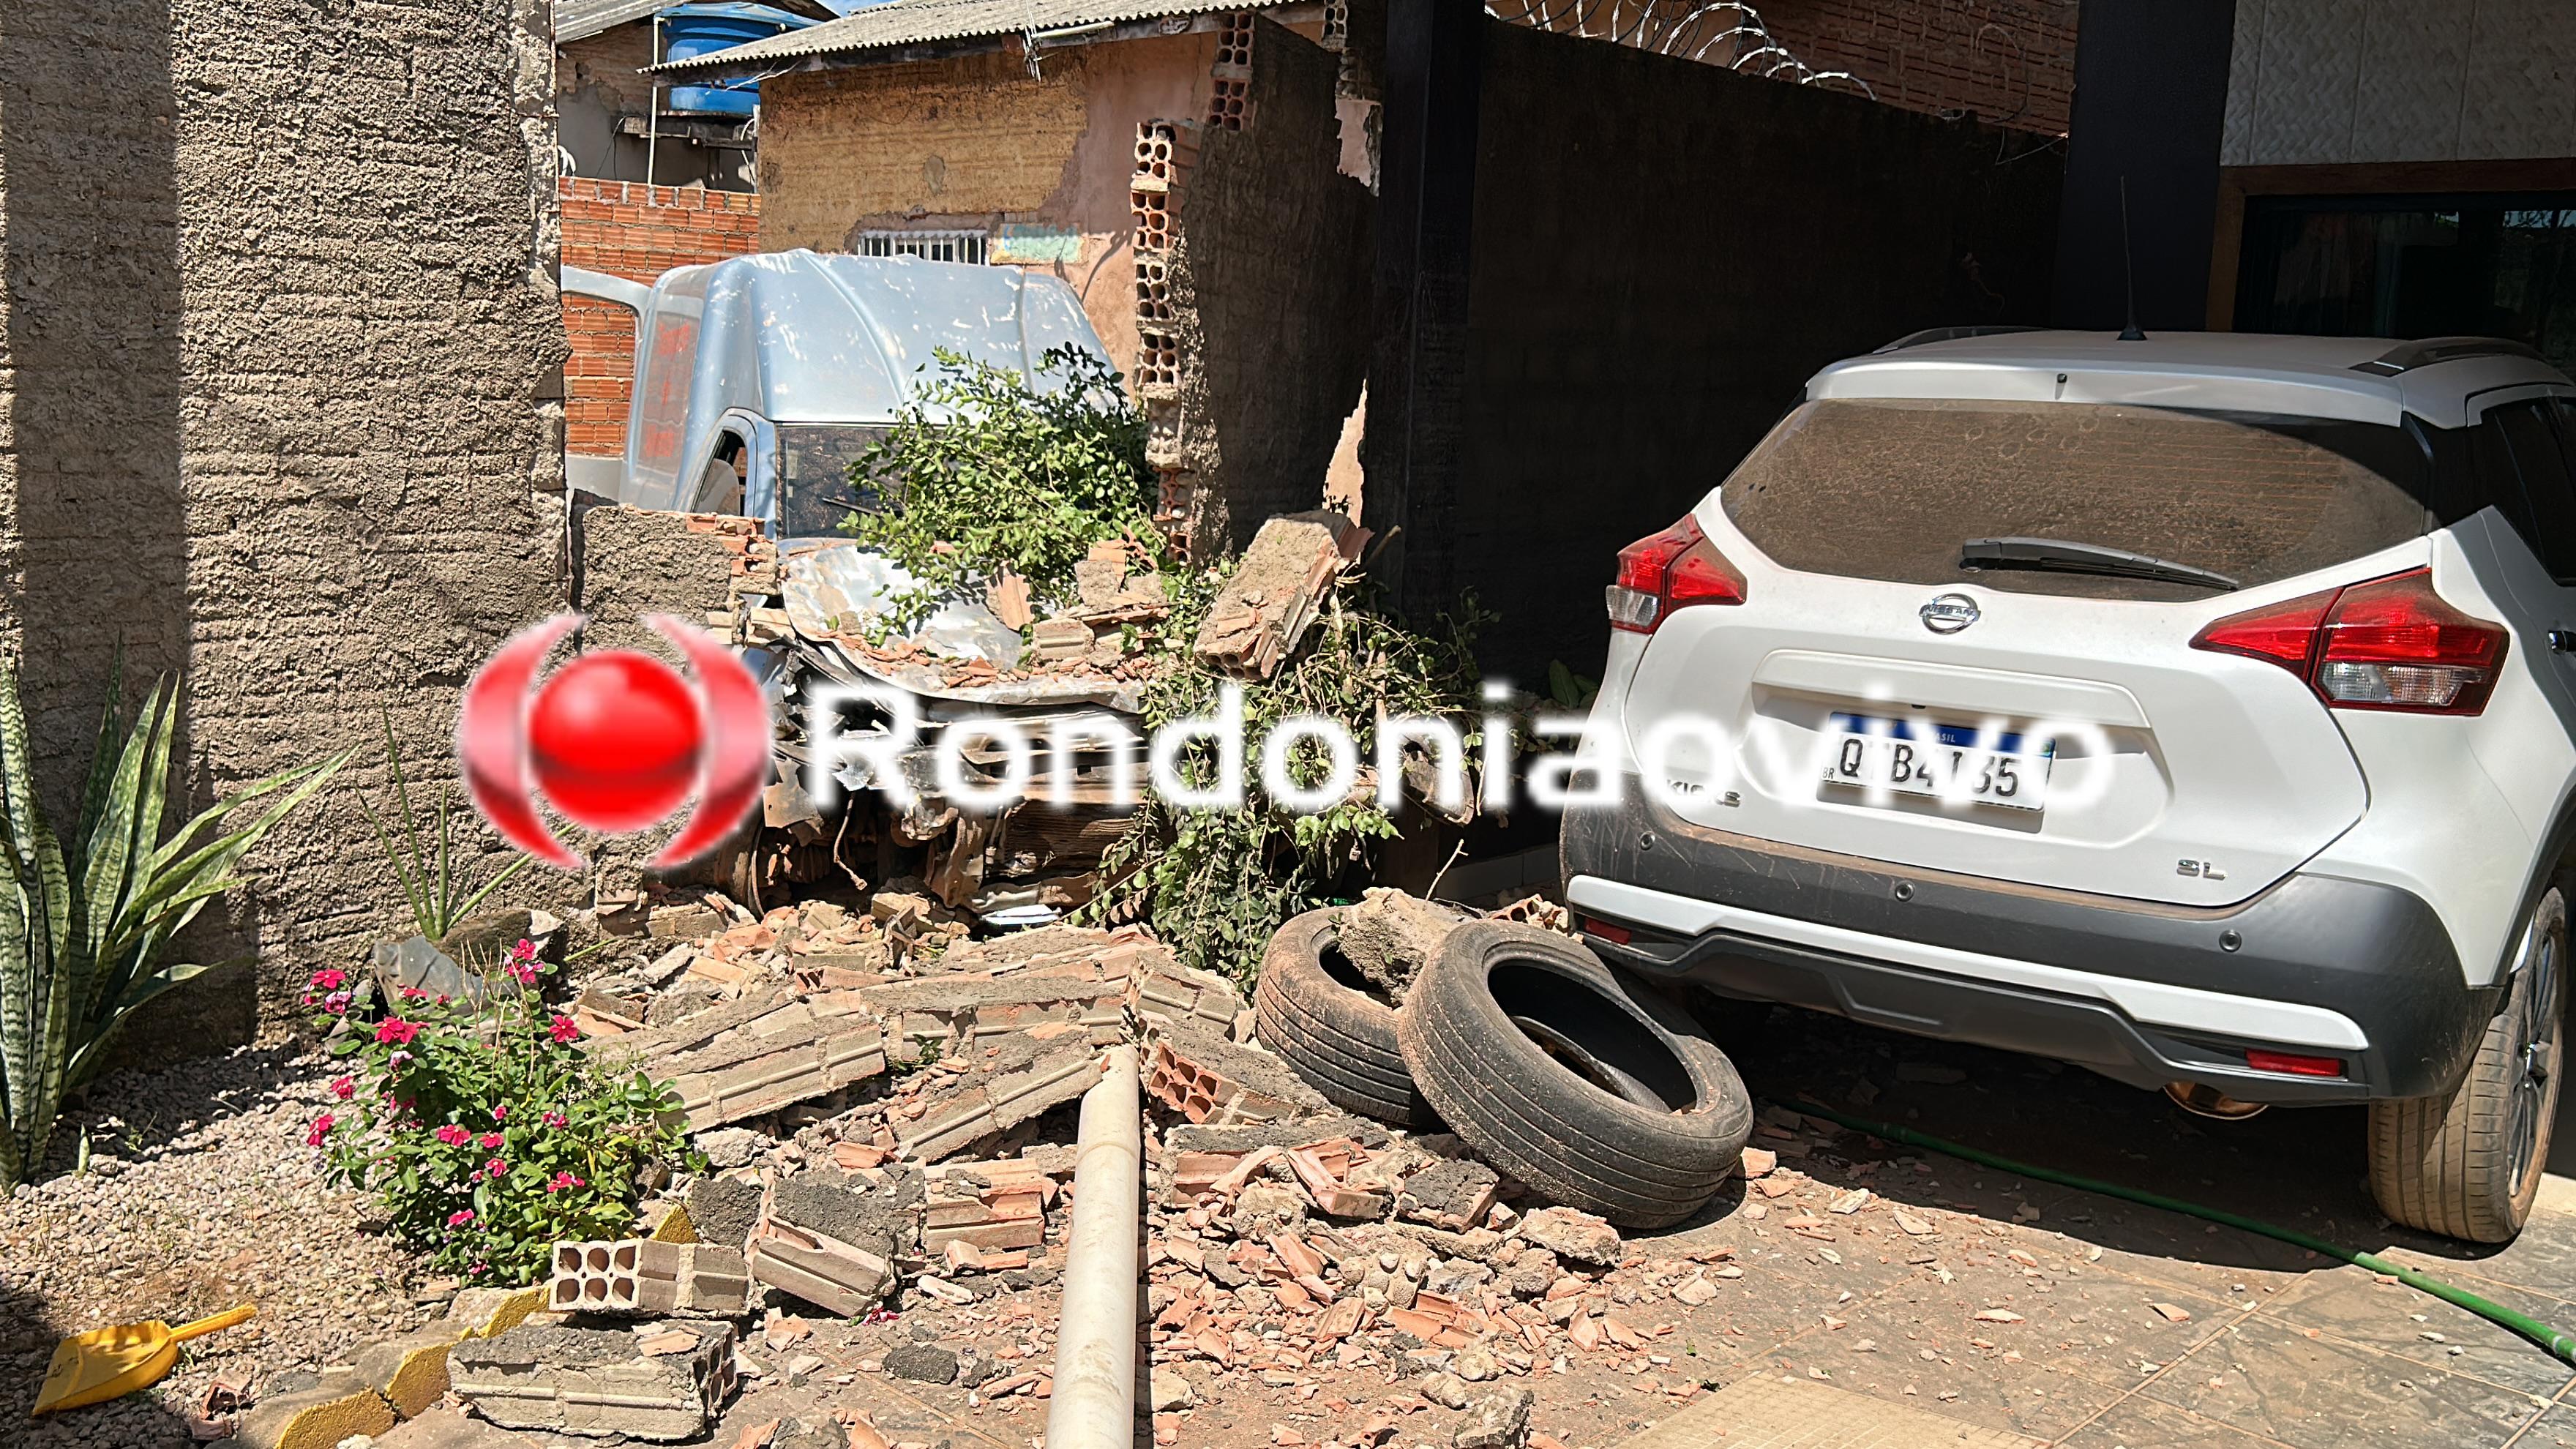 URGENTE: Motorista de carro passa direto em curva e destrói muros de residências